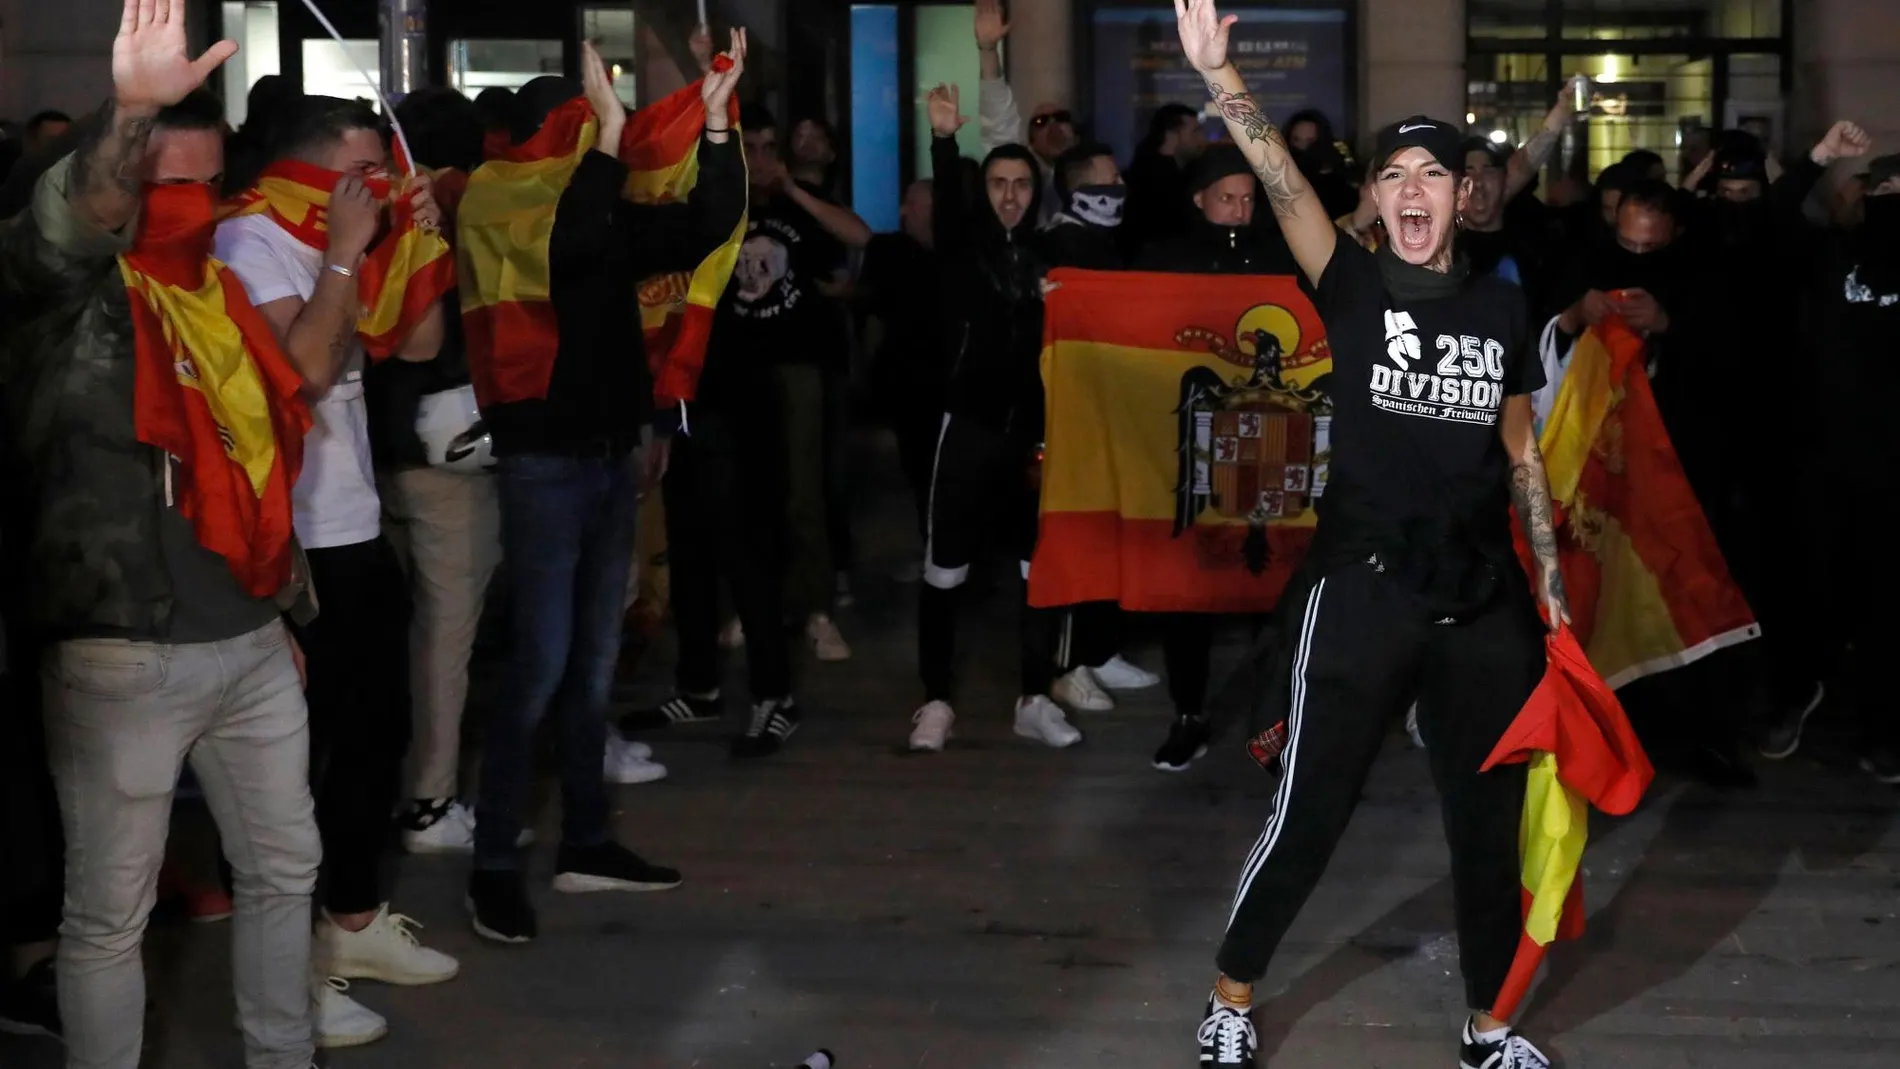 Unos 300 miembros de la ultraderecha se manifiestan para defender la unidad de España, hoy jueves en el barrio de Sarriá, Barcelona, custodiados por el cuerpo de los Mossos d,Esquadra.